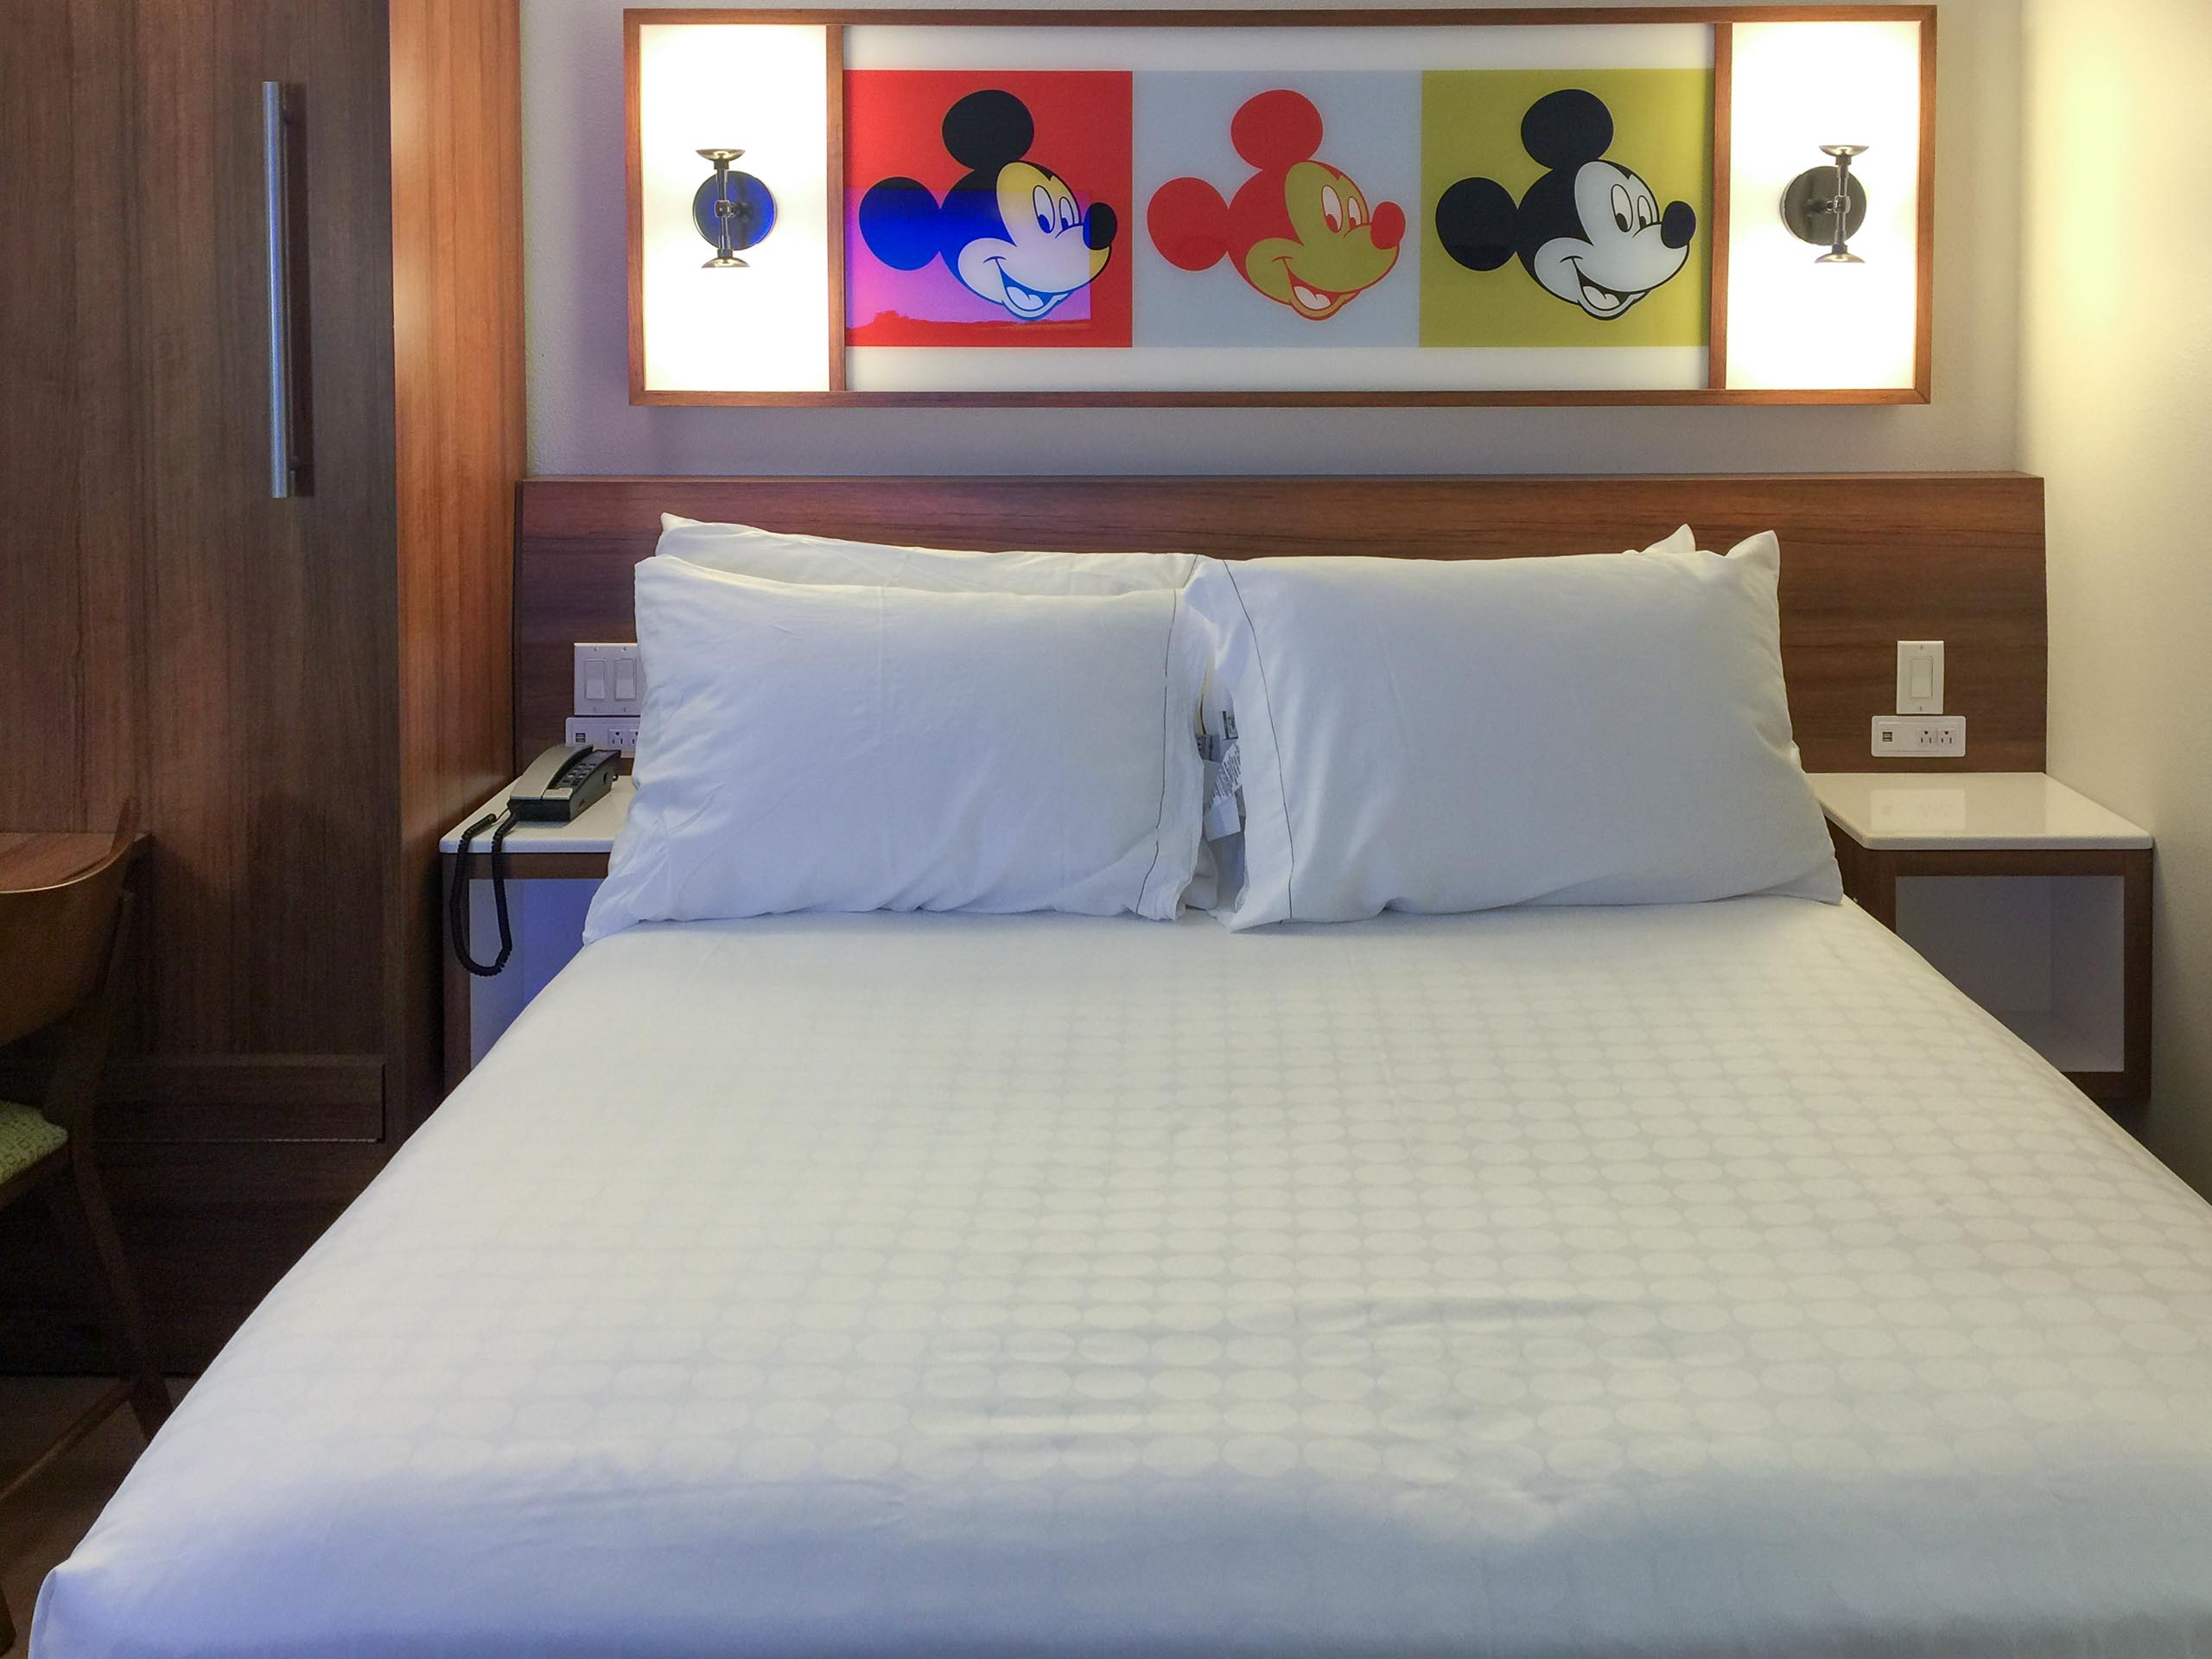 Photos New Look Guest Rooms At Disney S Pop Century Resort